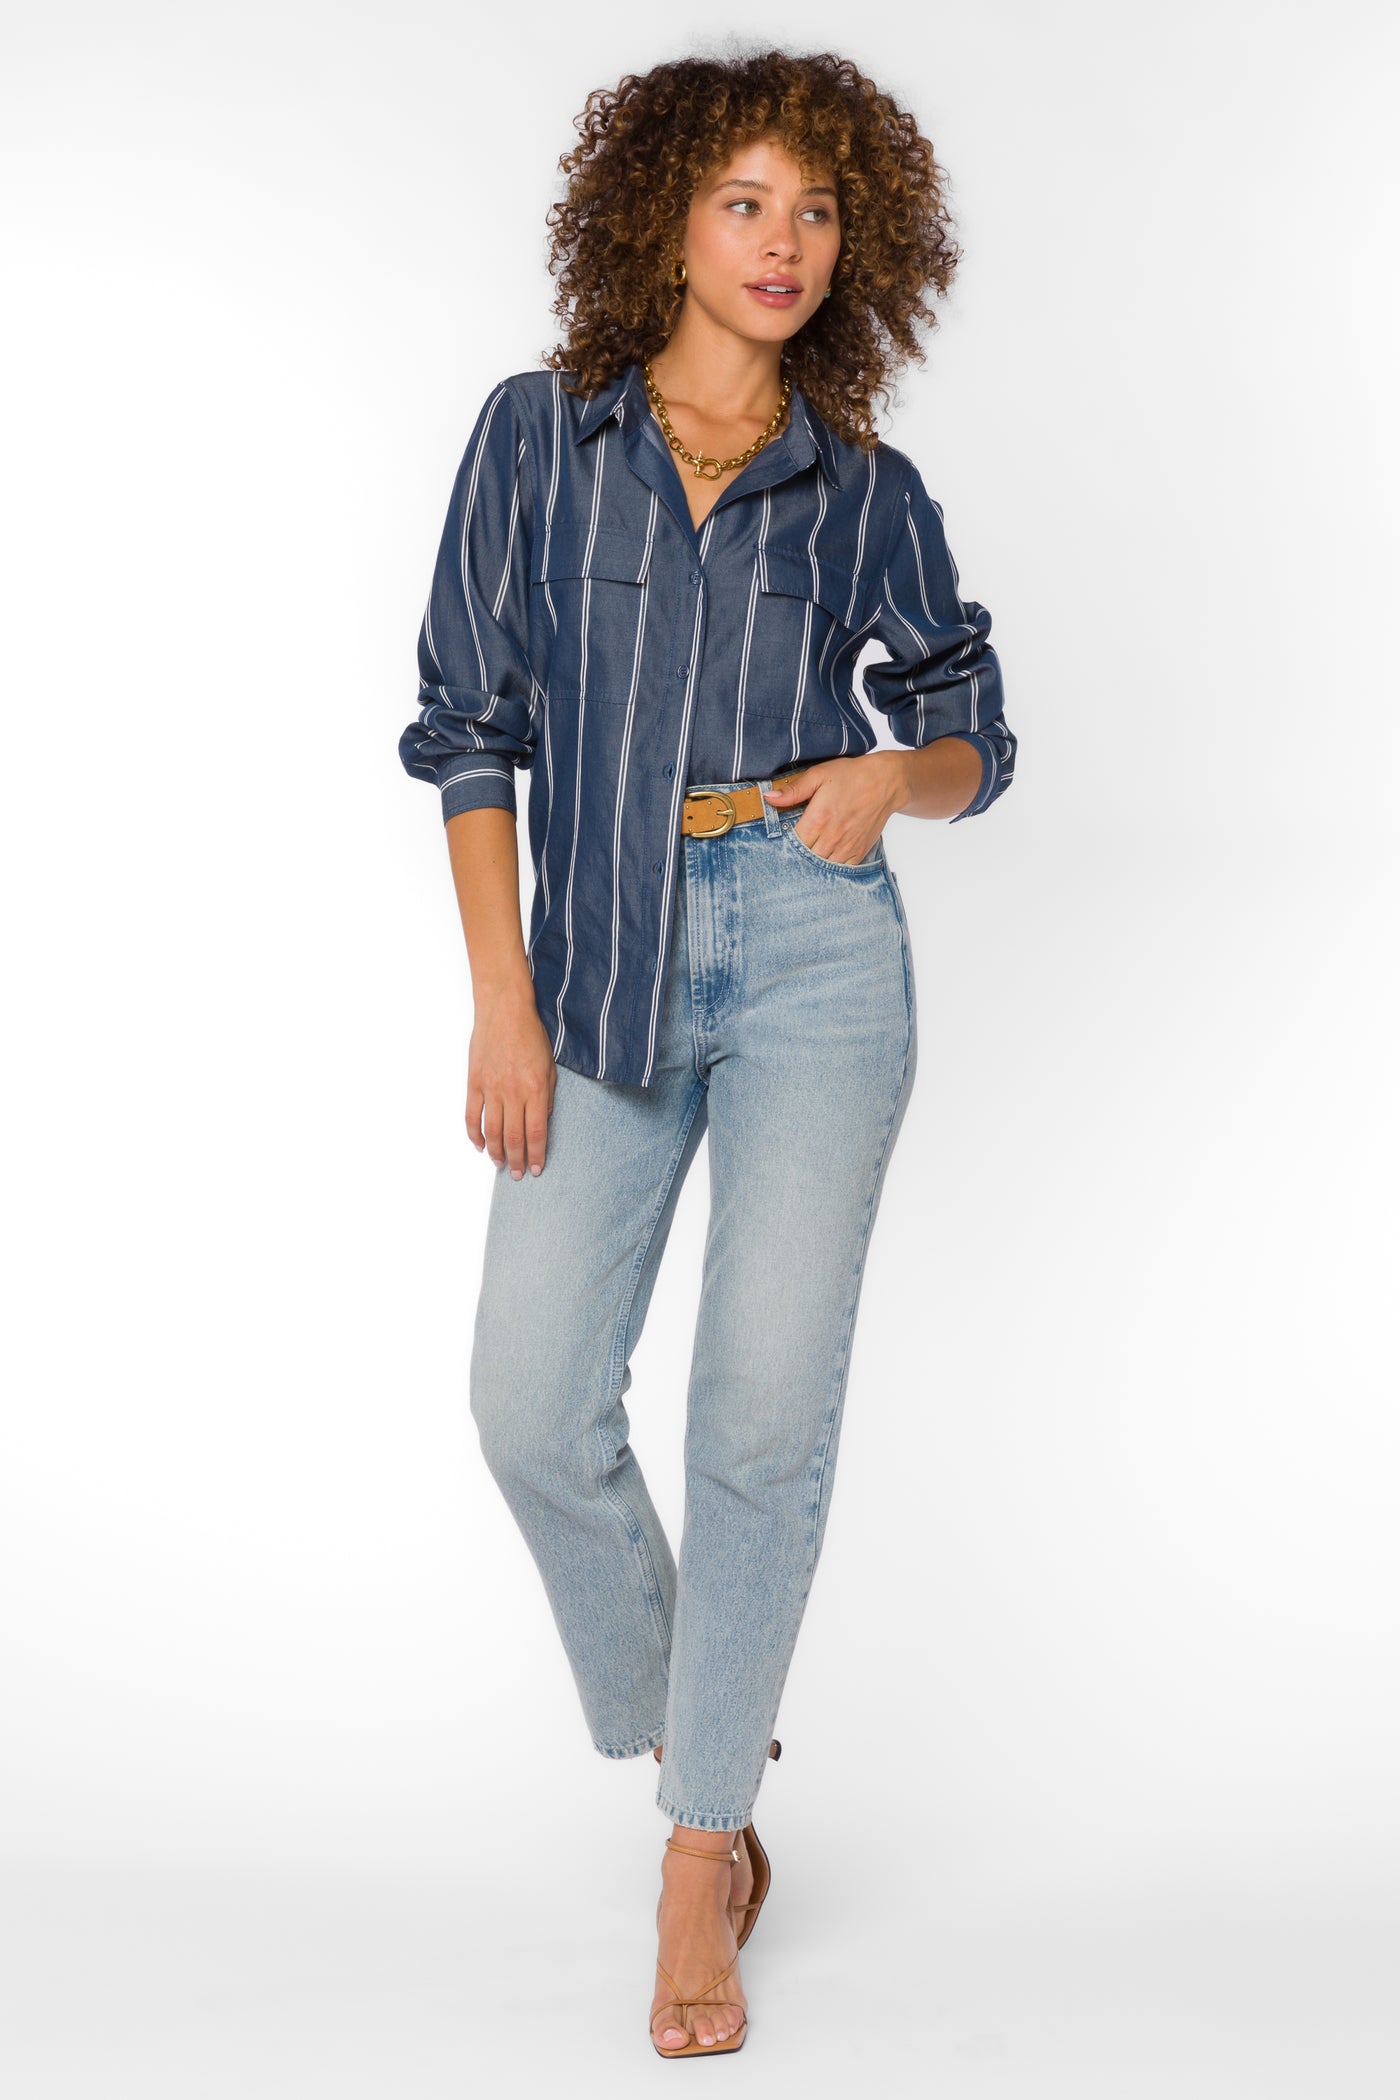 Talma Navy Stripe Shirt - Tops - Velvet Heart Clothing